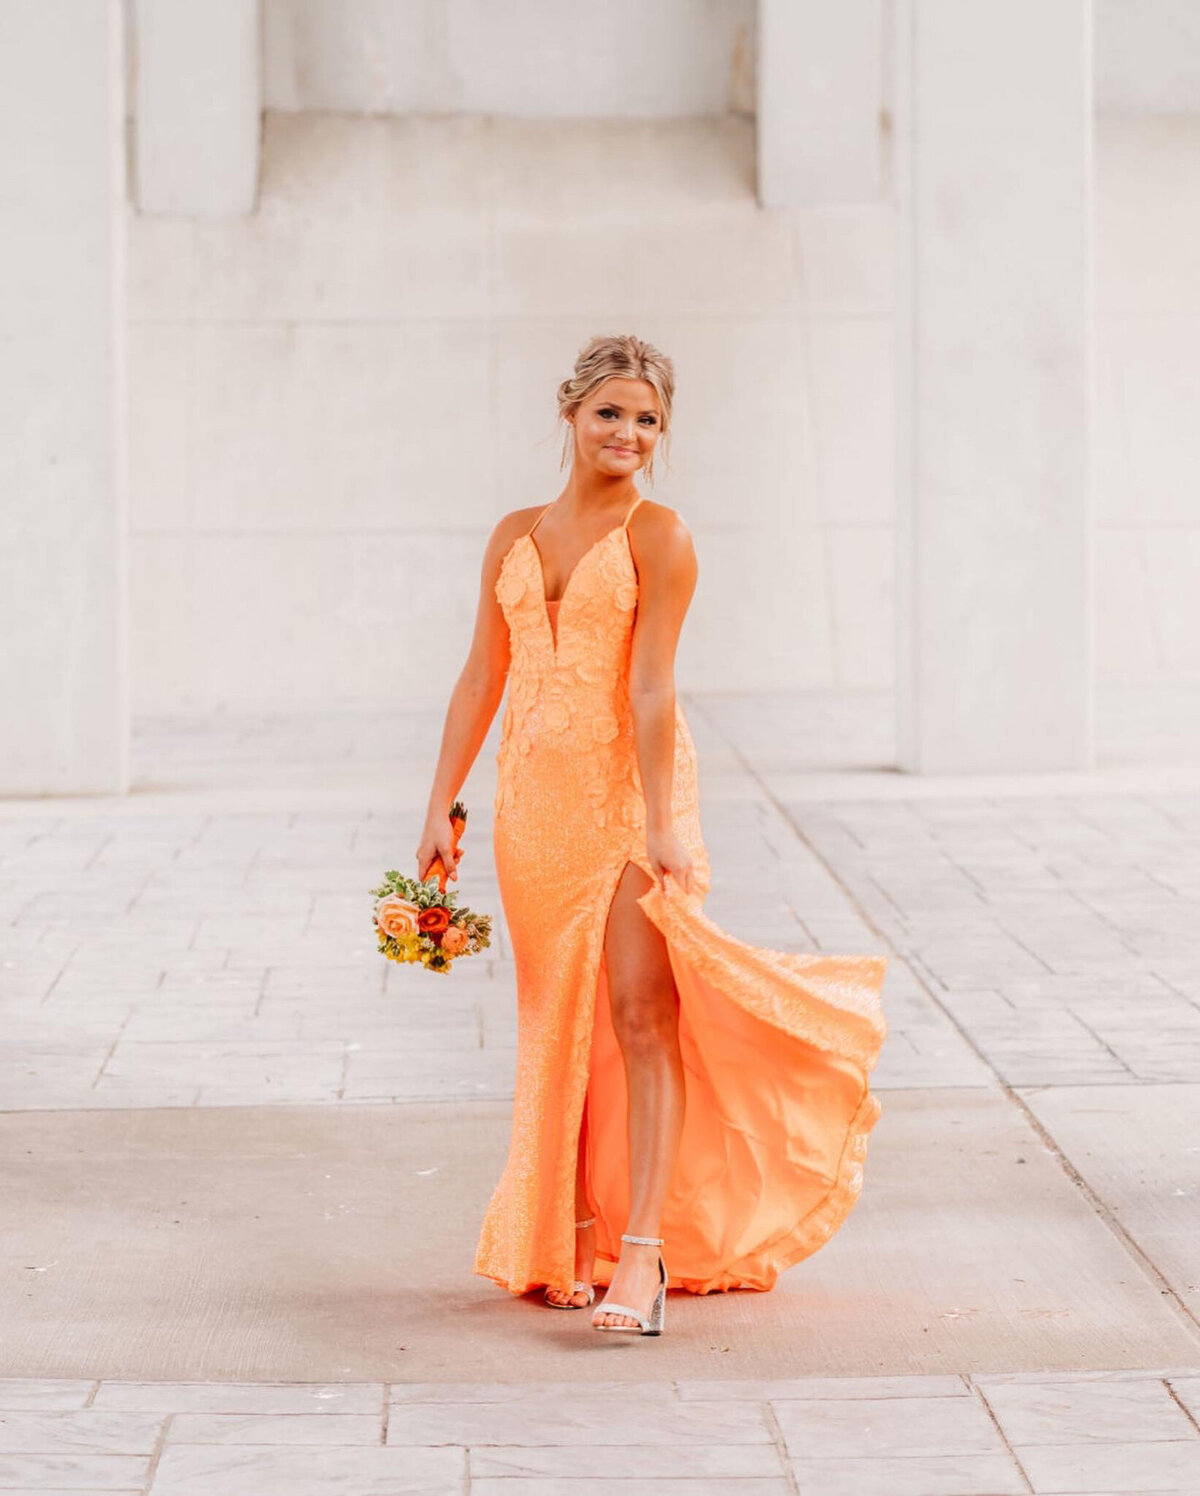 photo of girl in orange prom dress